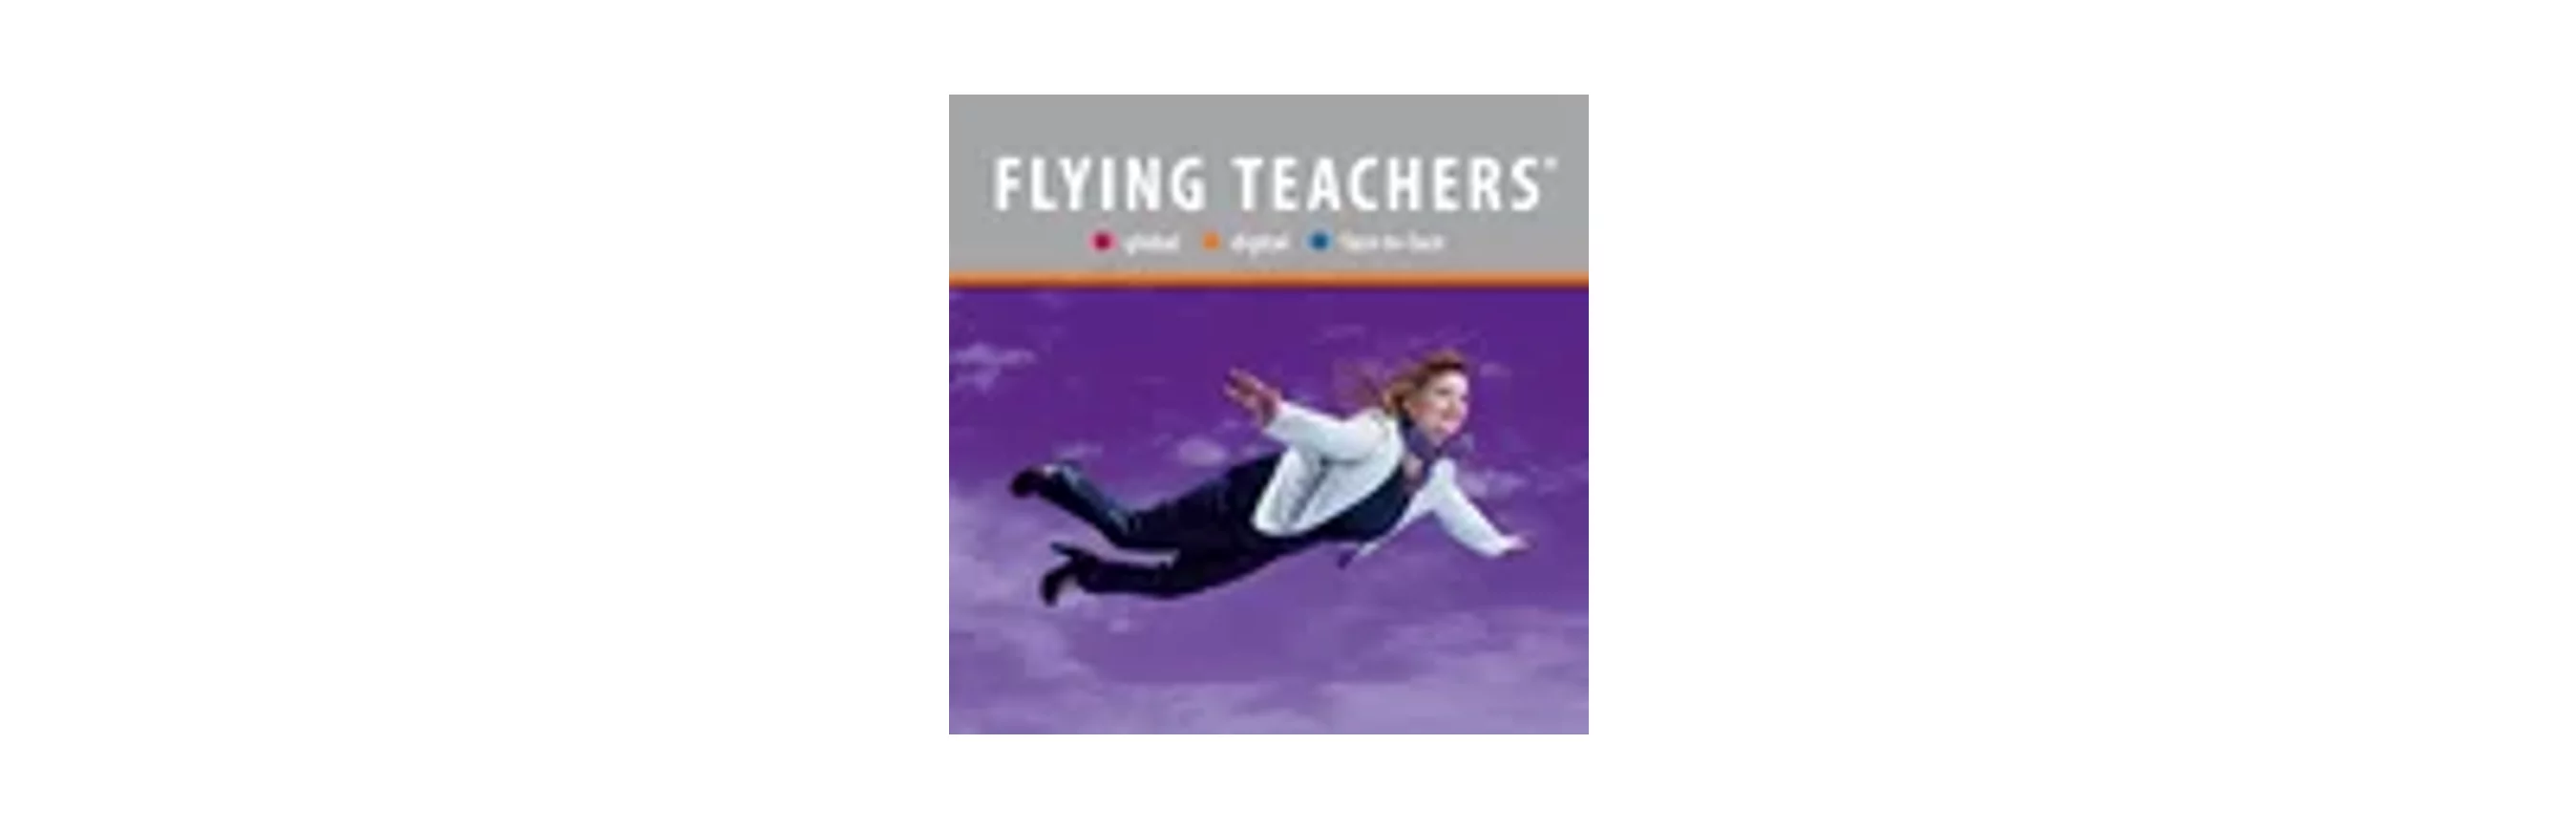 flying teachers